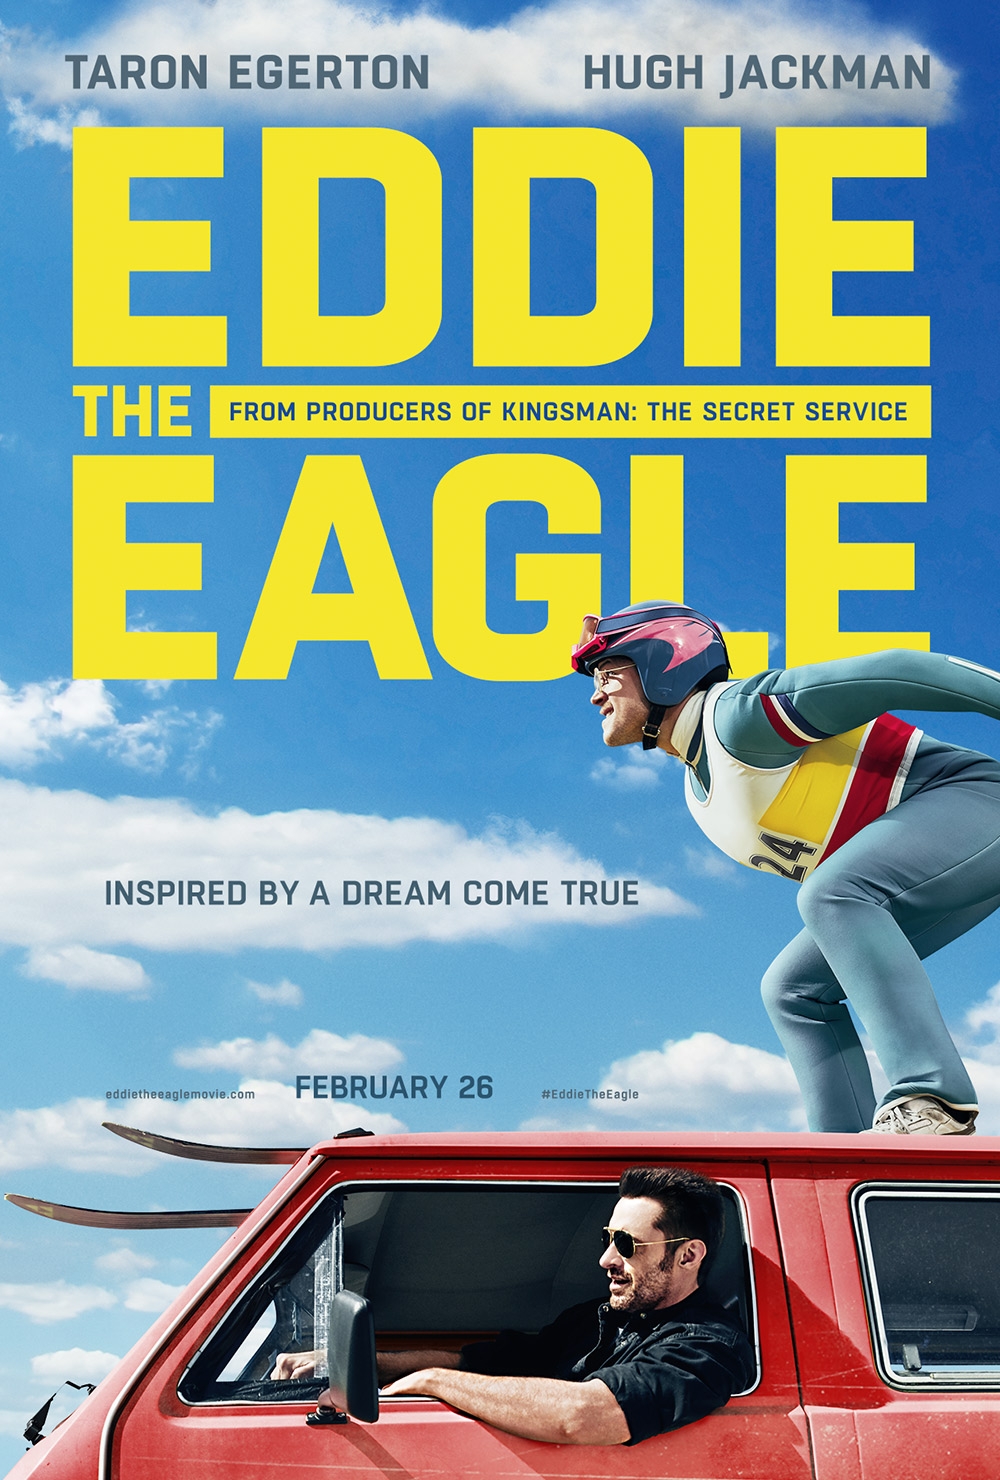 Eddie the Eagle 2016